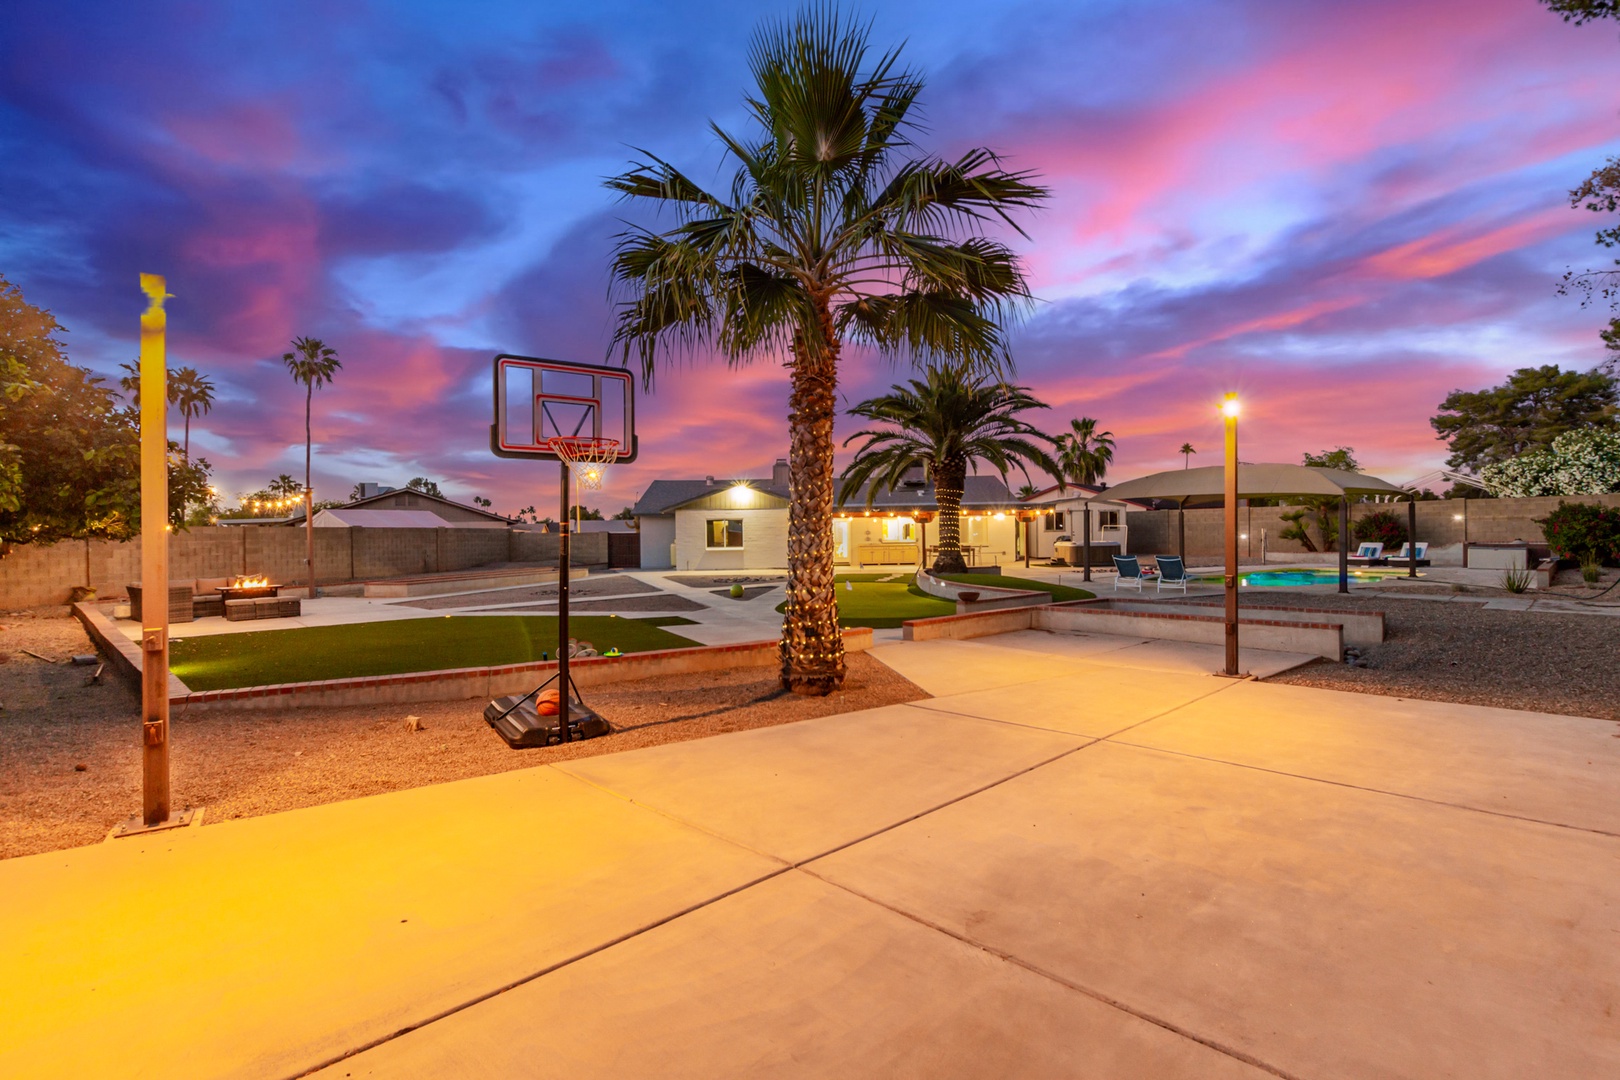 Outdoor basketball area